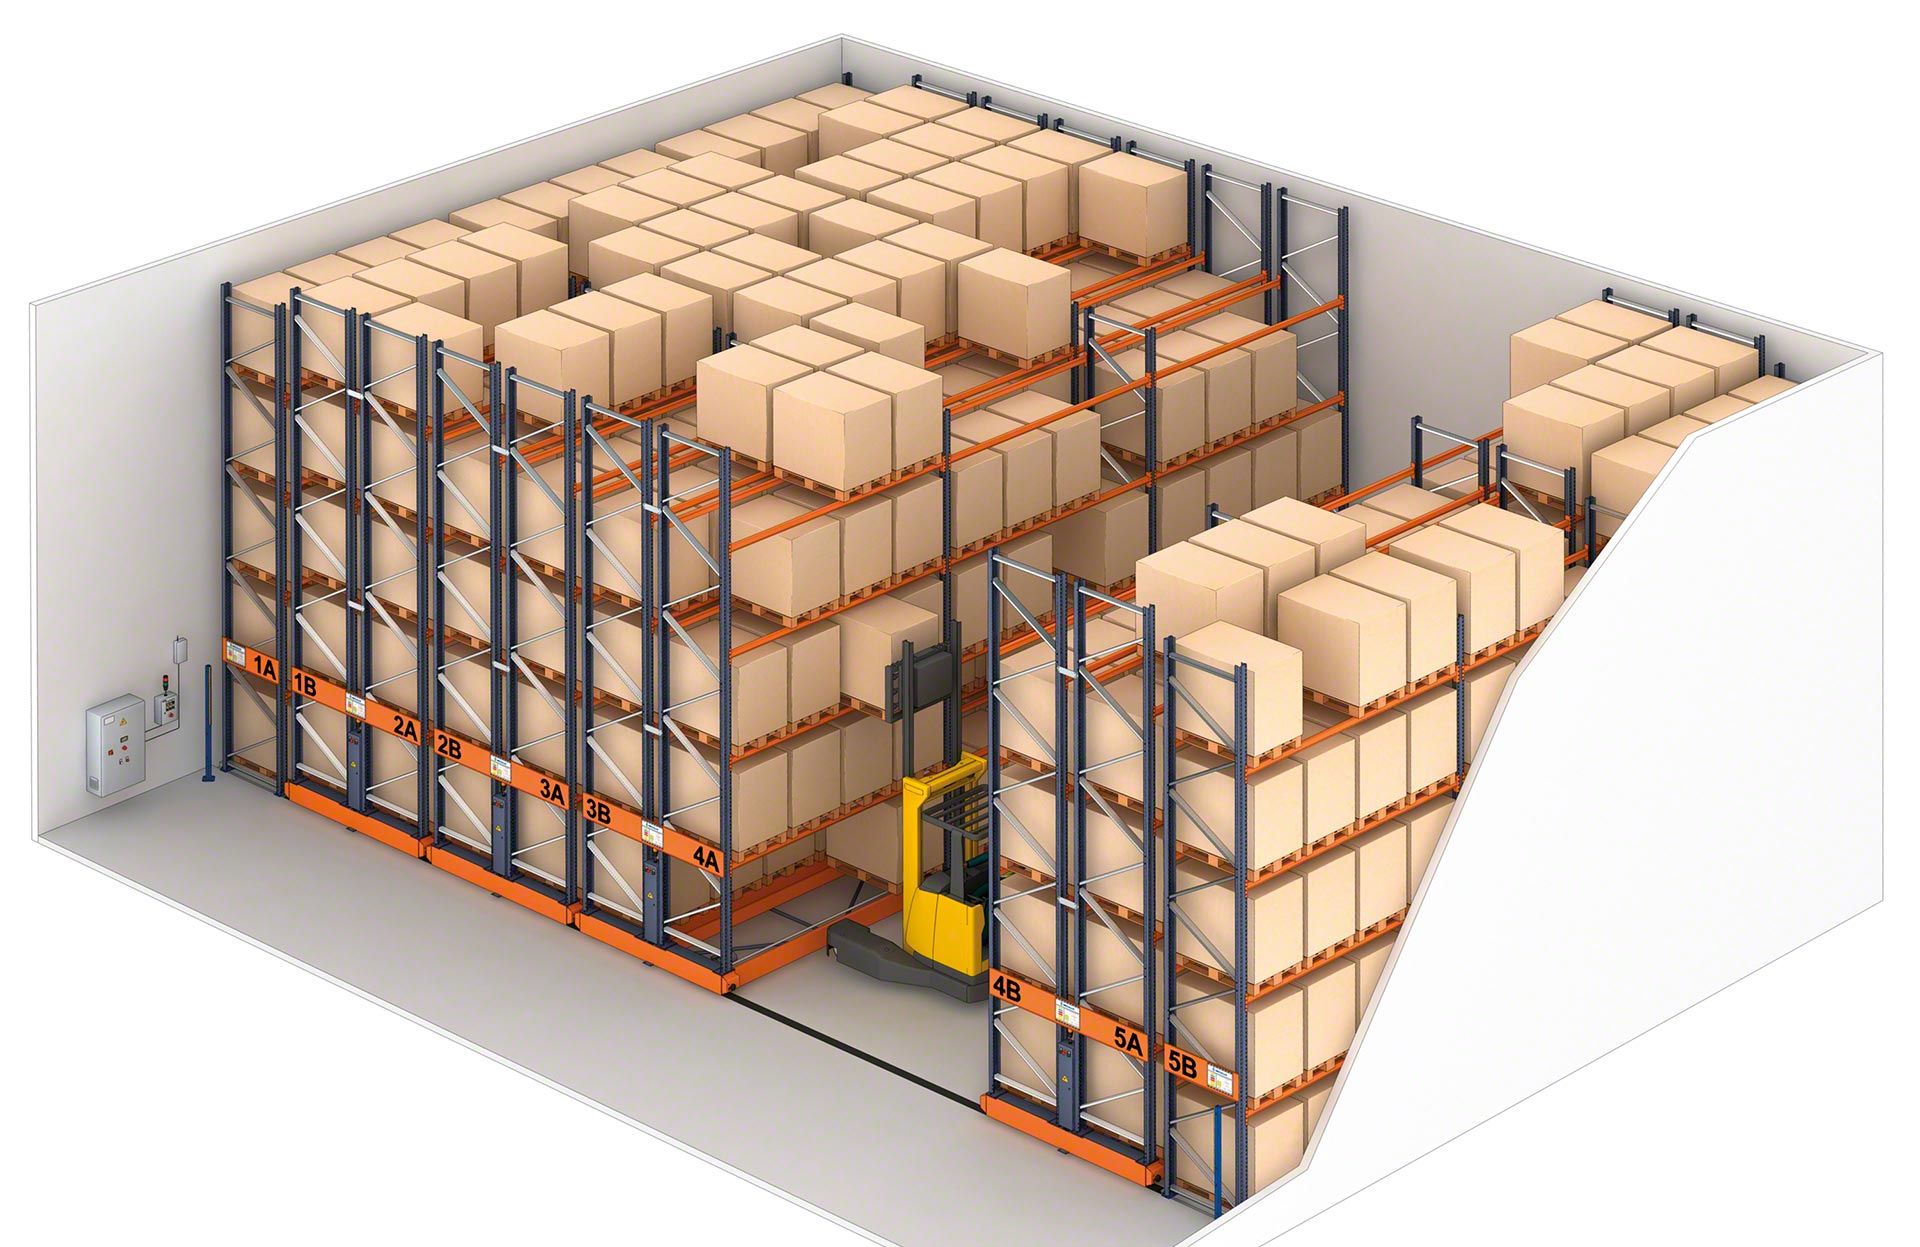 Le rack mobile offre un compactage maximal pour augmenter la capacité de l’entrepôt